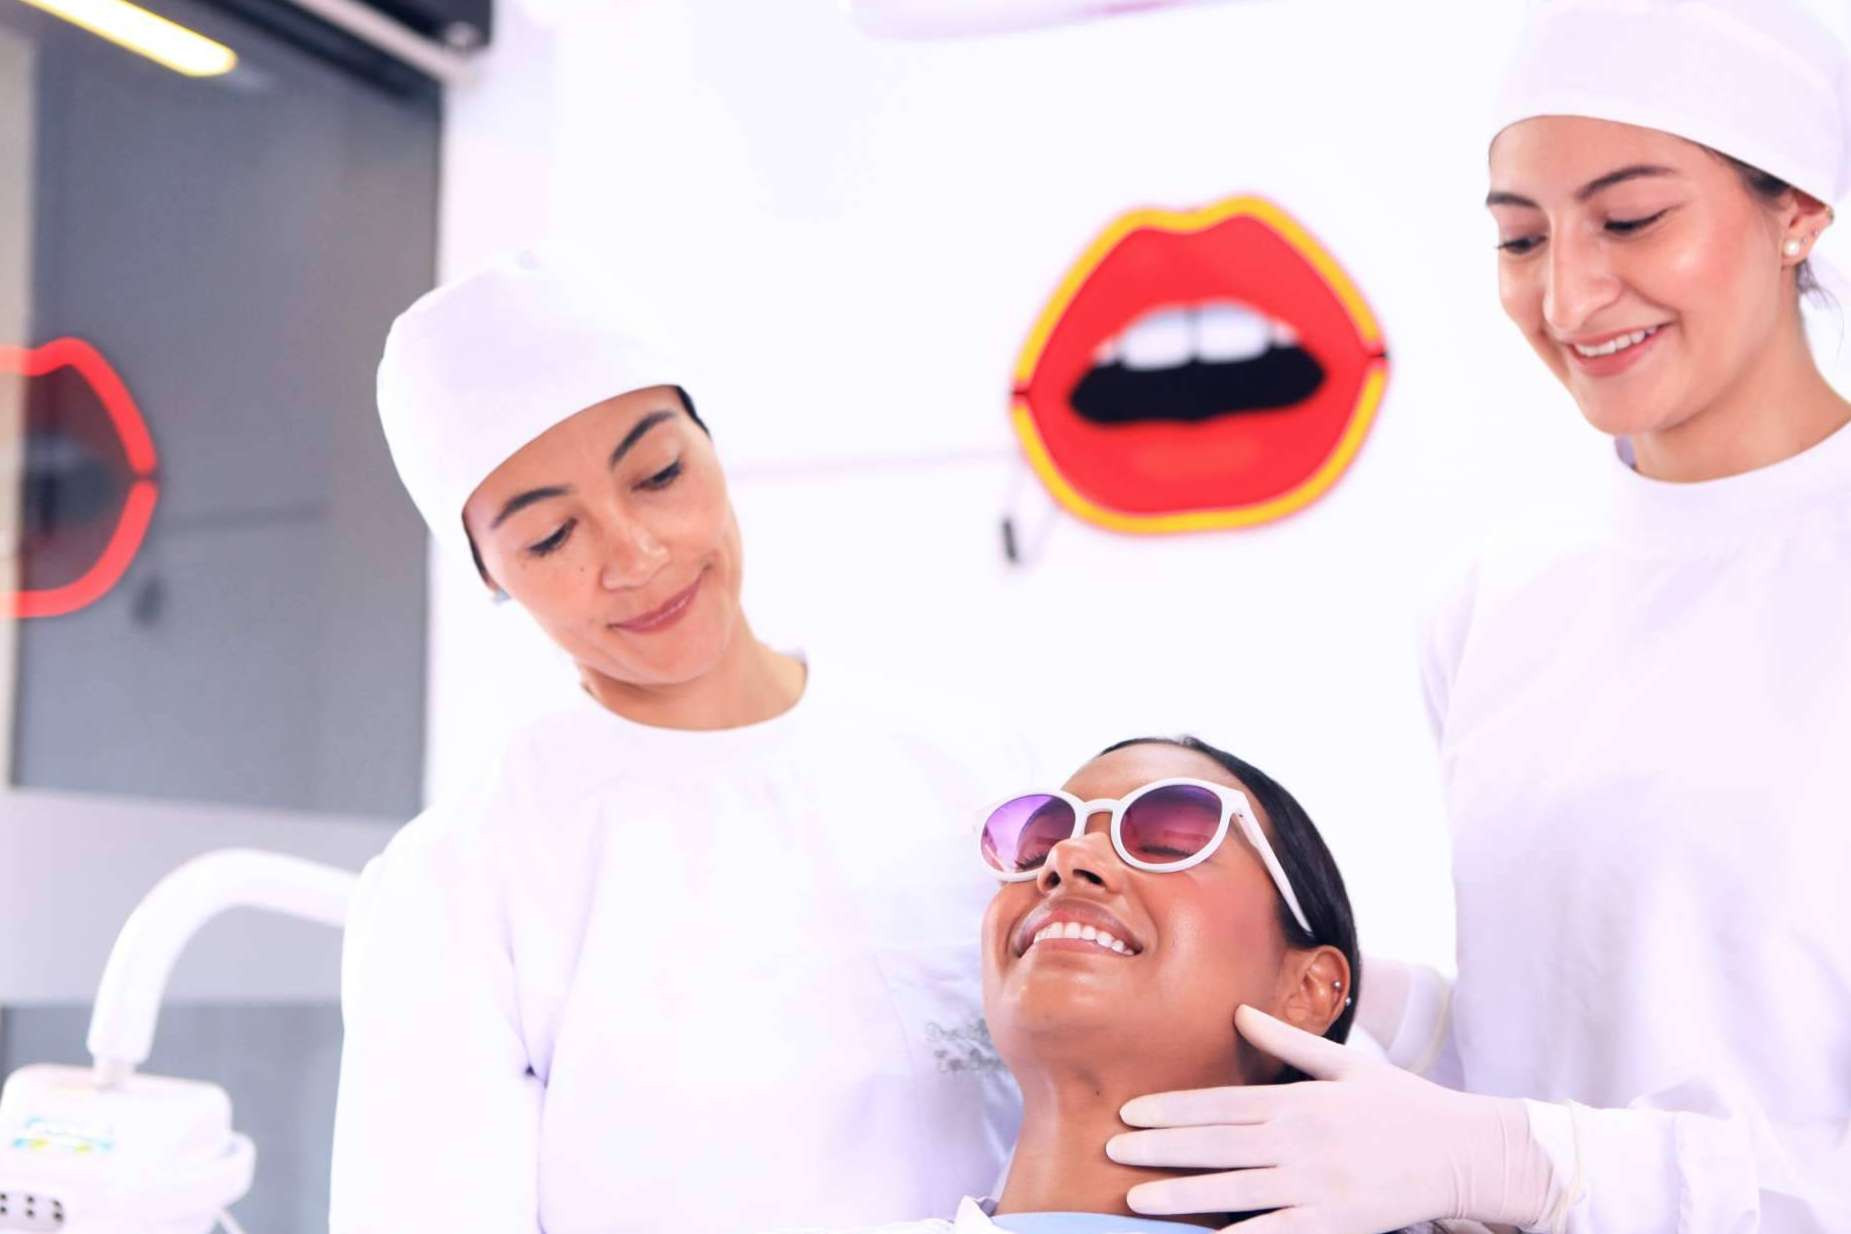  Diseño de sonrisa, el tratamiento dental de mayor demanda en Odontología de Marlon Becerra 